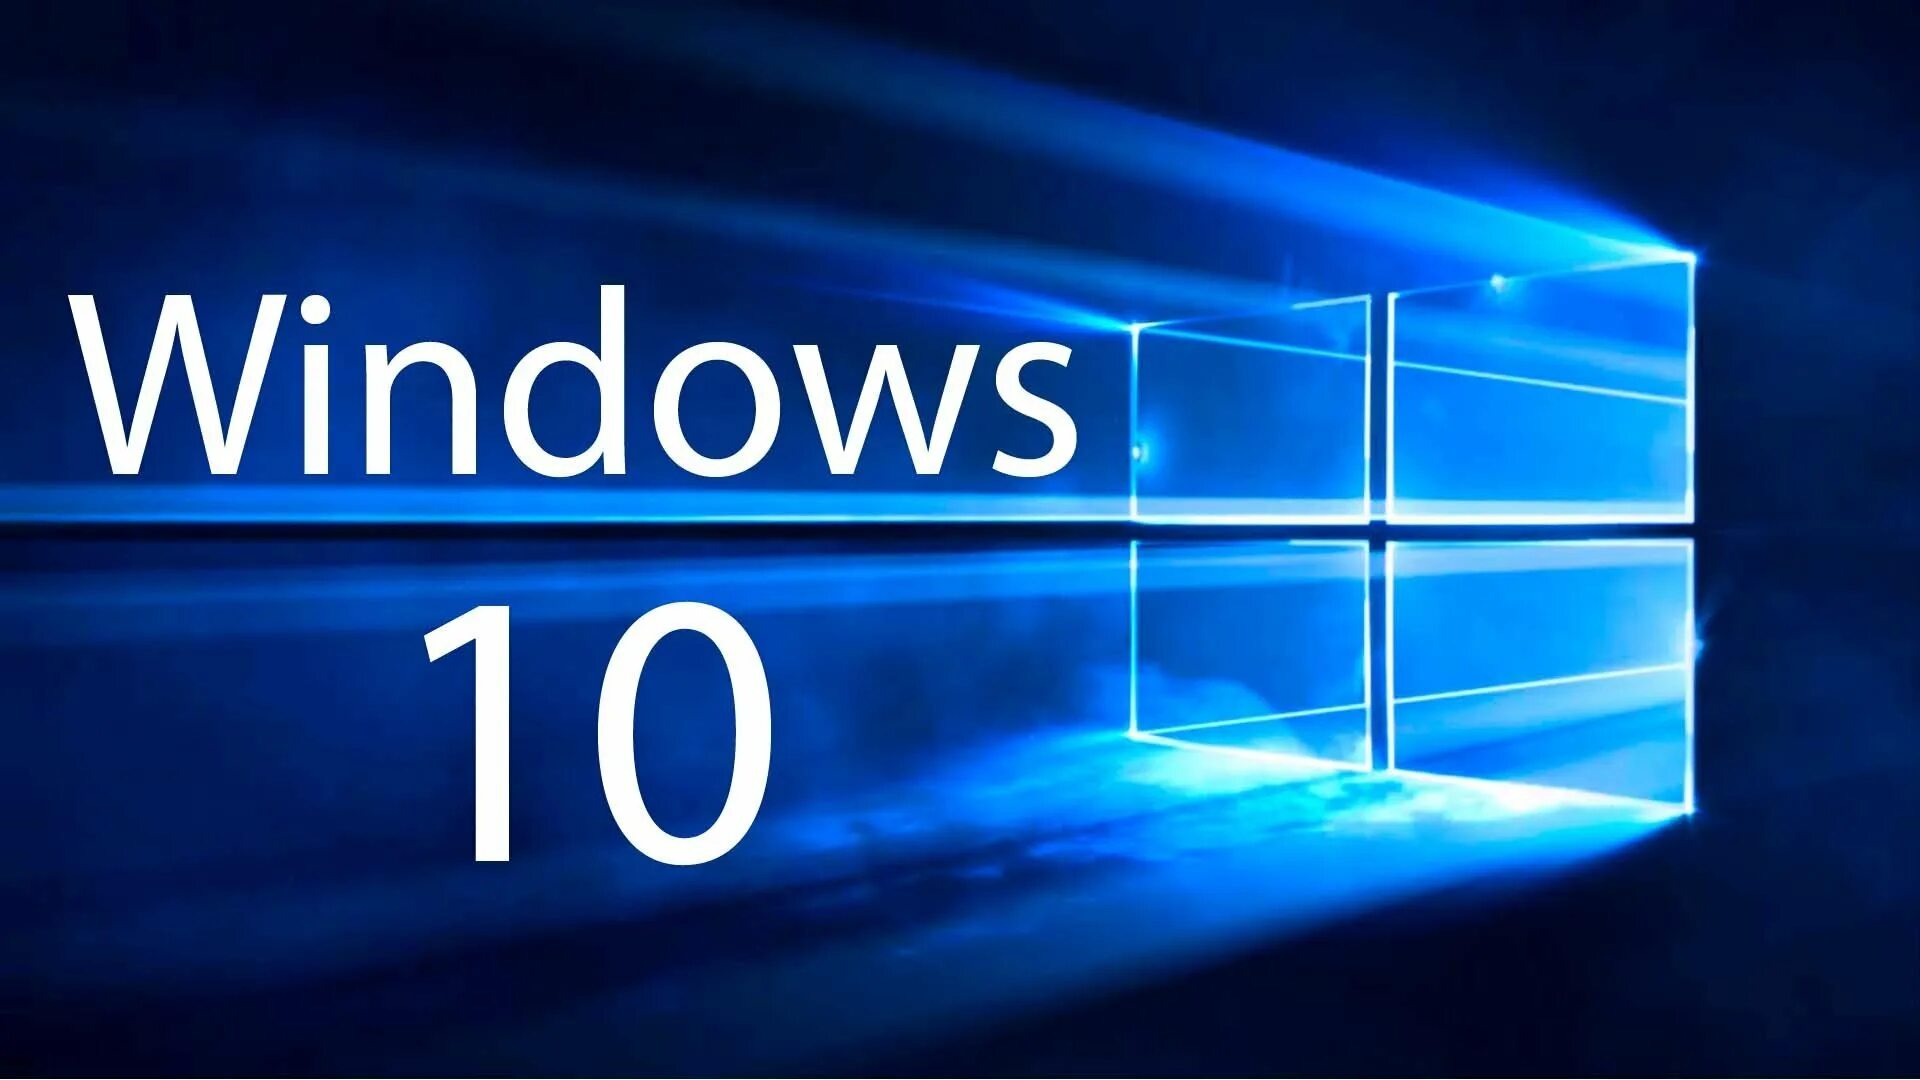 Windows 10 200. Microsoft Windows 10. ОС виндовс 10. Логотип виндовс 10. Картинки виндовс 10.